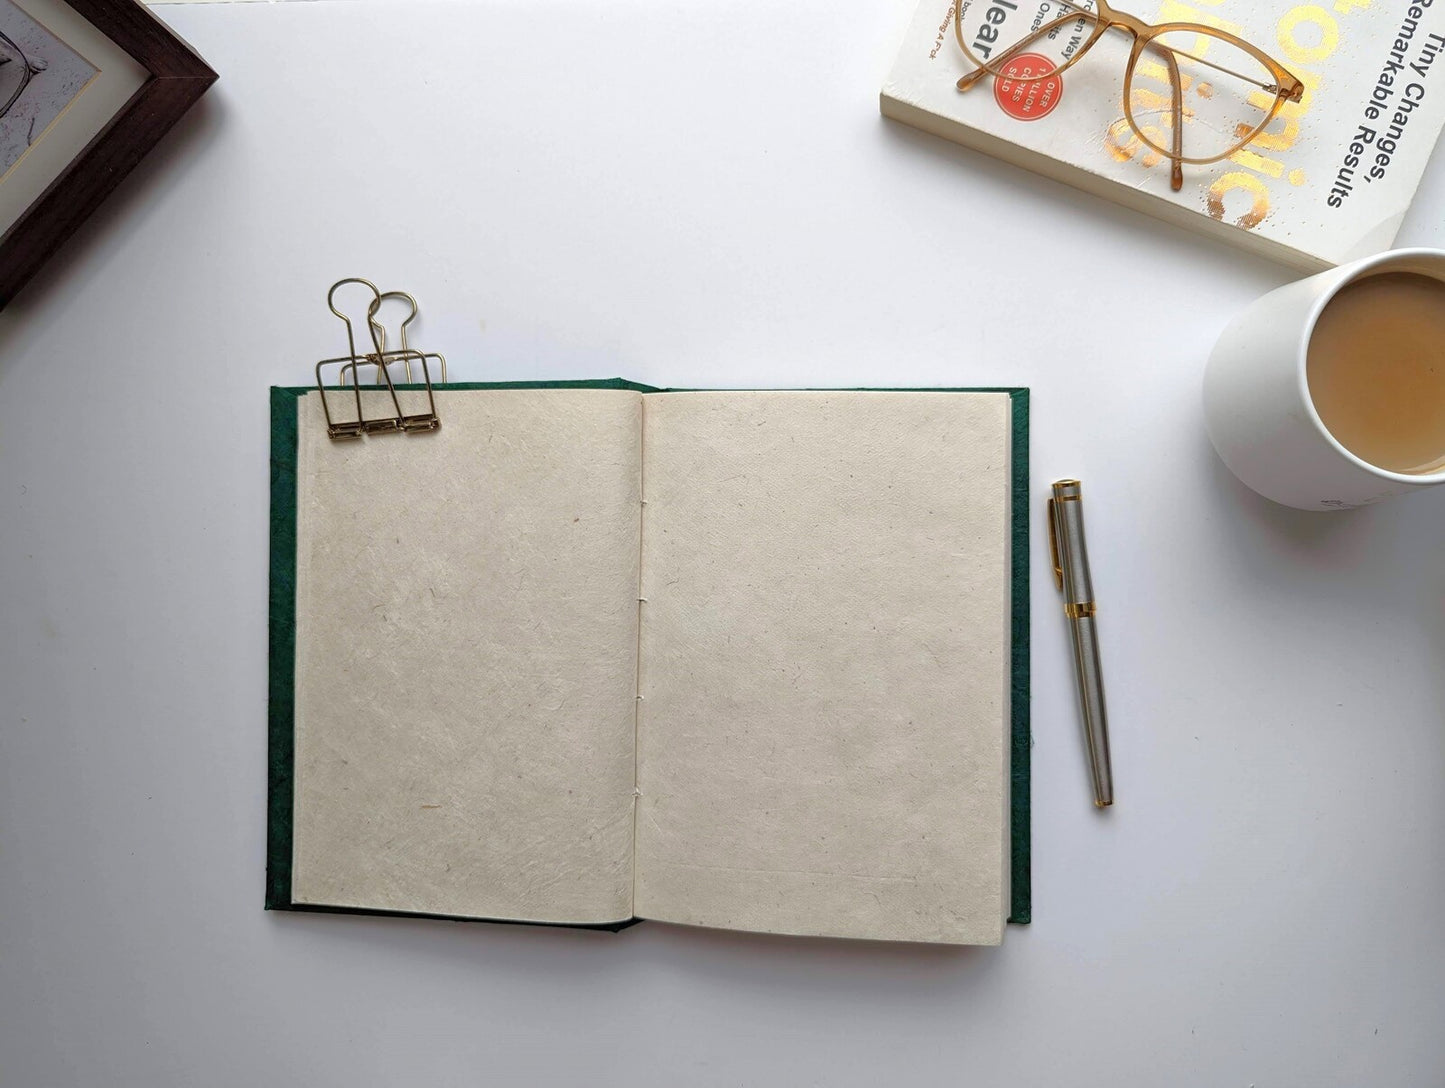 Handmade Paper Journal | Emerald Green